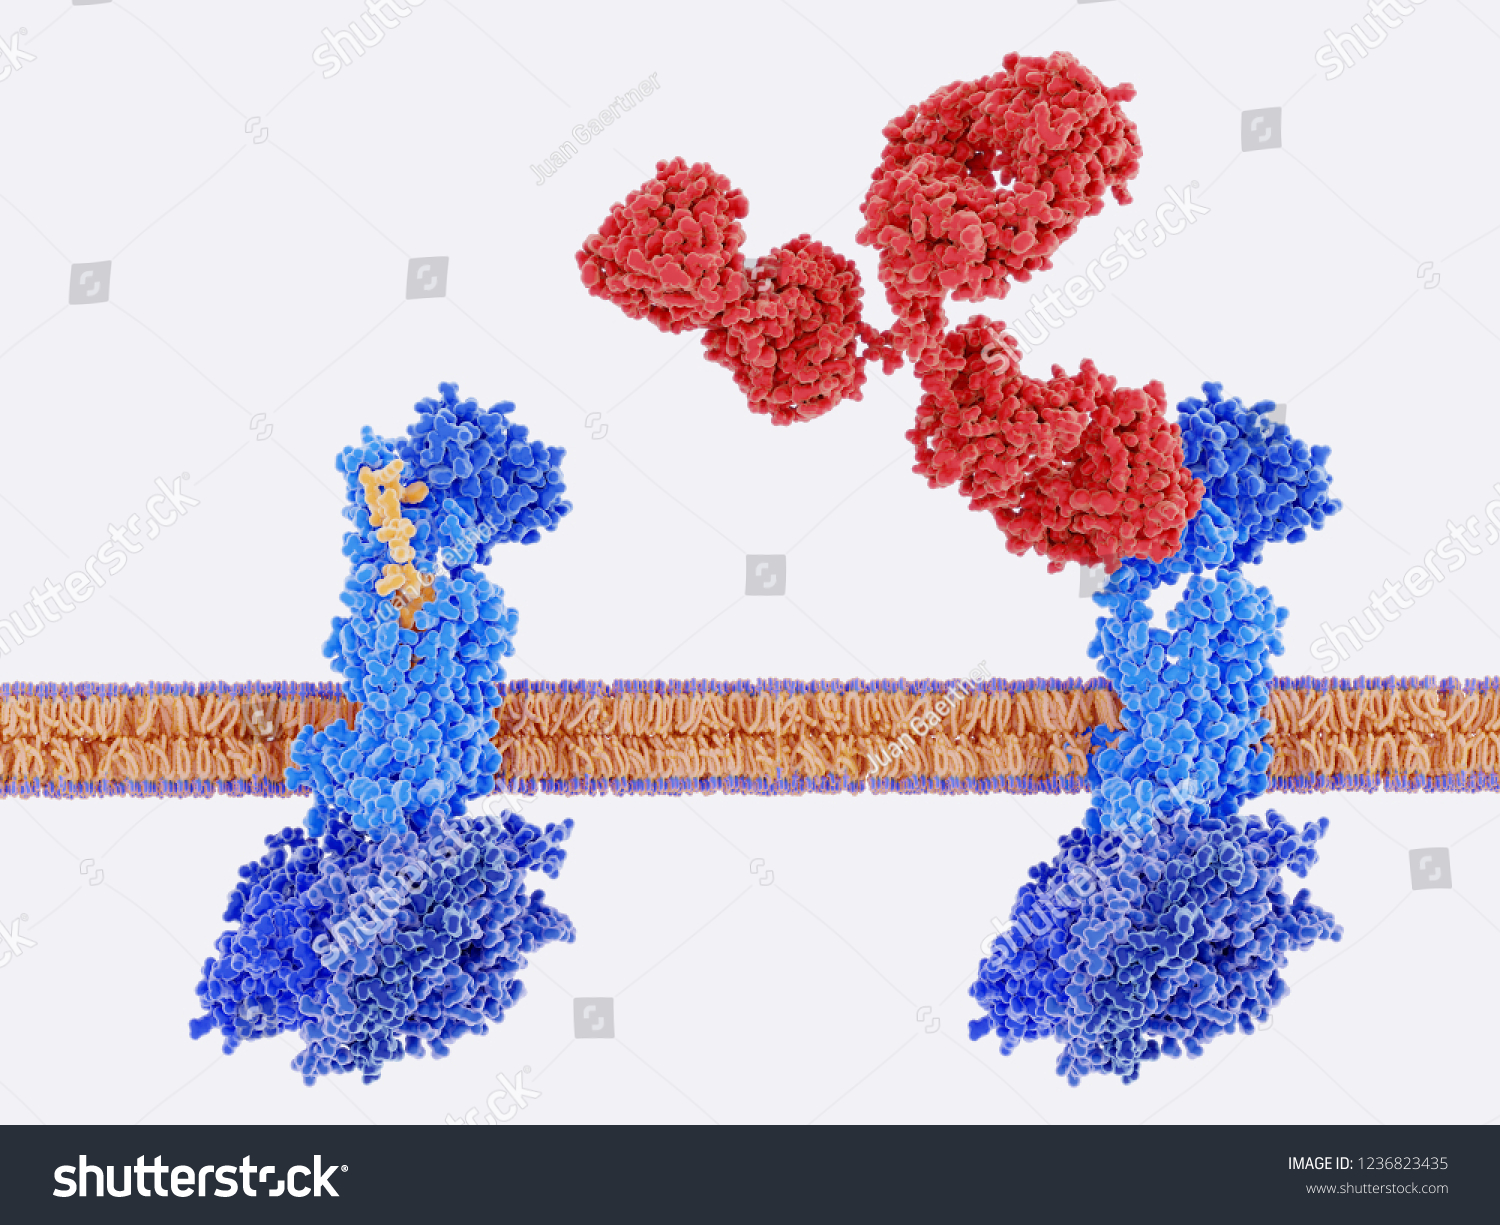 カルシトニン遺伝子関連ペプチド Cgrp 黄色 は その受容体 左 に結合し モノクローナル抗体 赤 は Cgrp受容体を阻害する そのブロッキングは片頭痛発作の量を減らす 3dレンダリング のイラスト素材